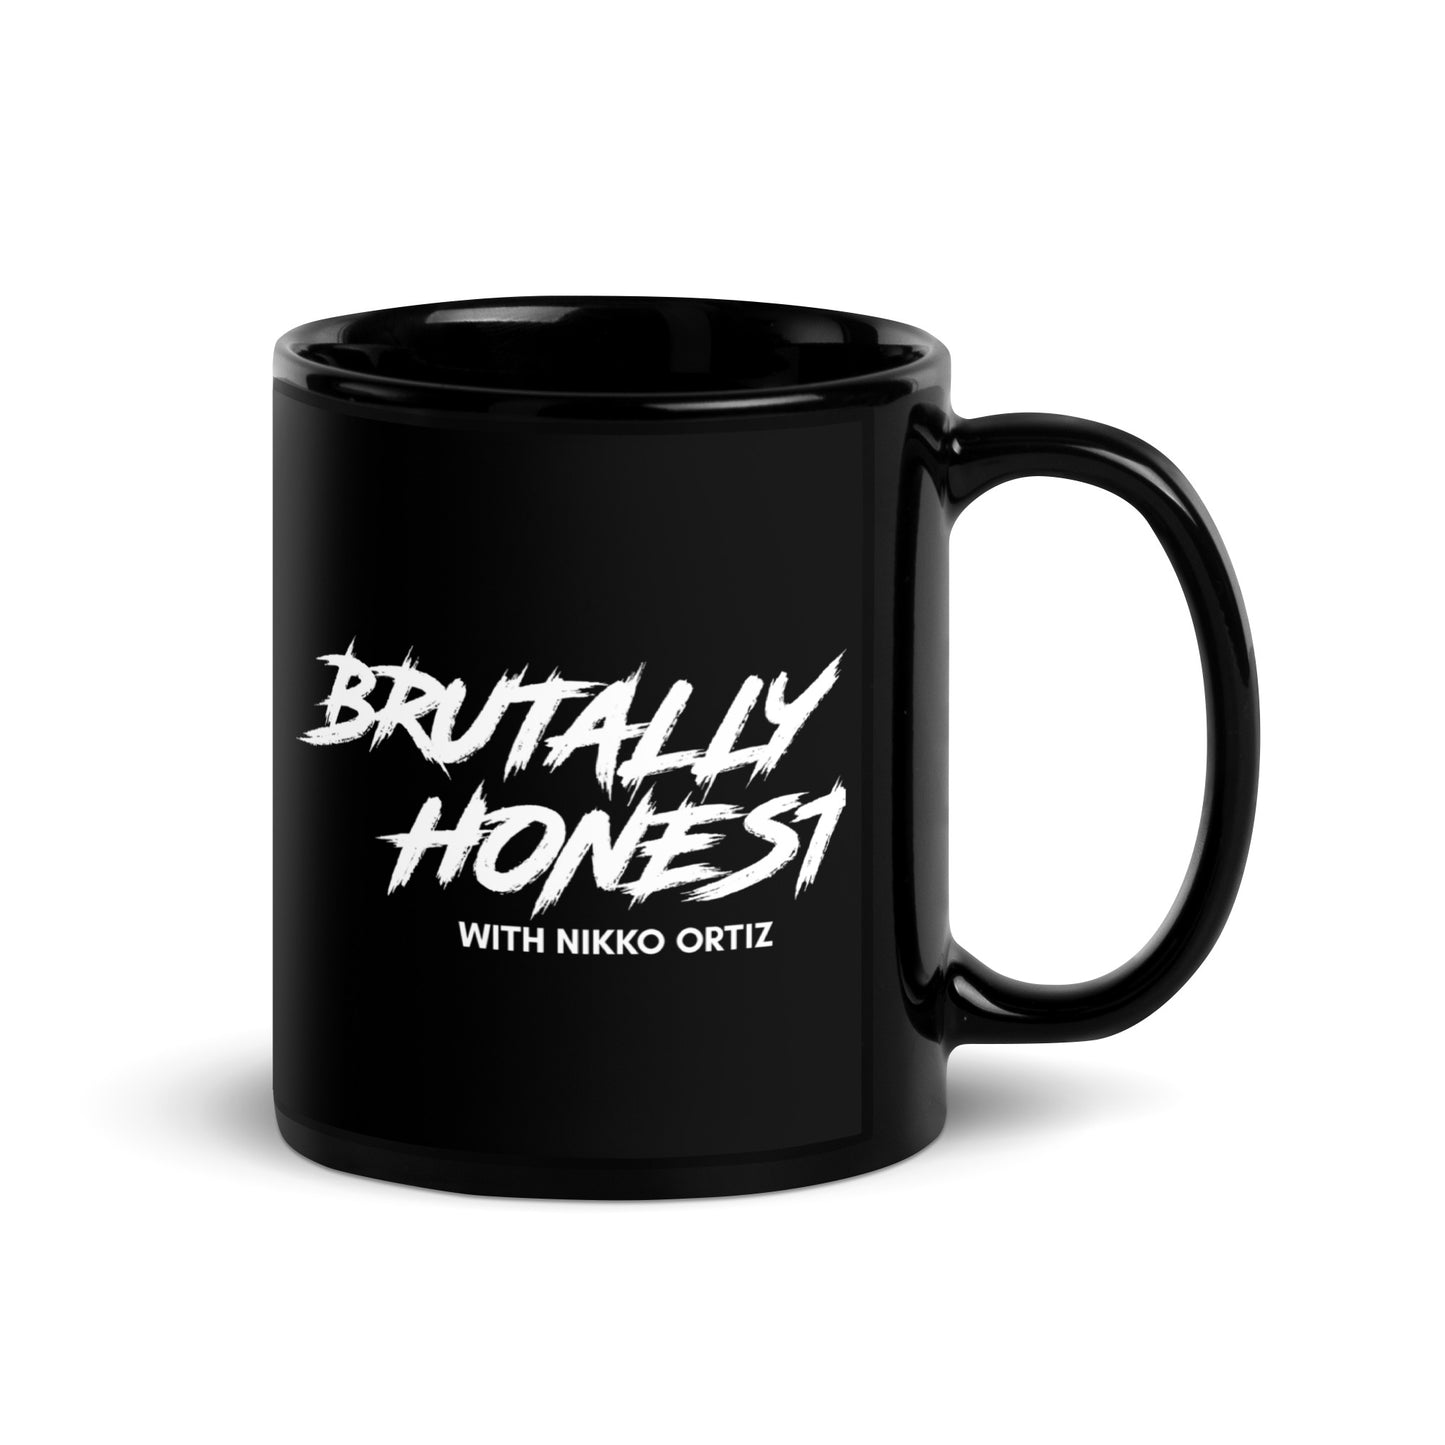 Brutally Honest Coffee Mug